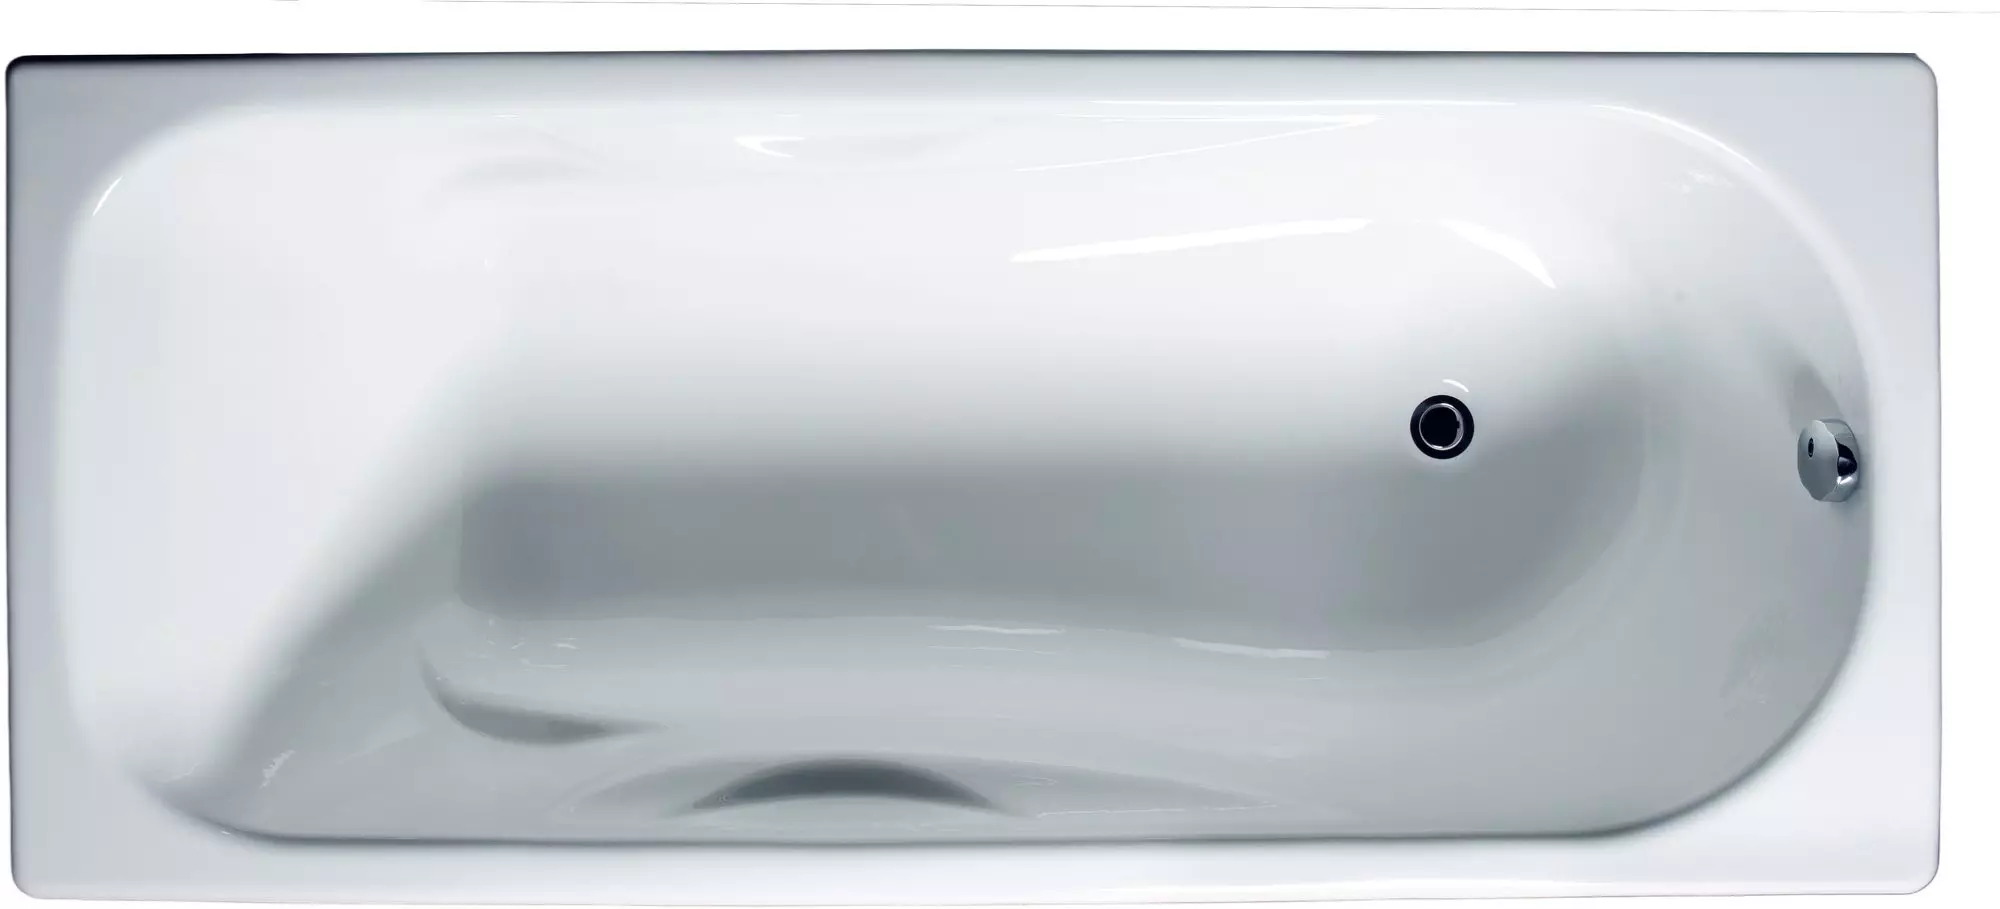 Леано железни бањи на руското производство: Киров и Новокузнецк, модели со анти-лизгање слој и други. Популарни големини: 170x70, 180x80, 140x70 10231_16